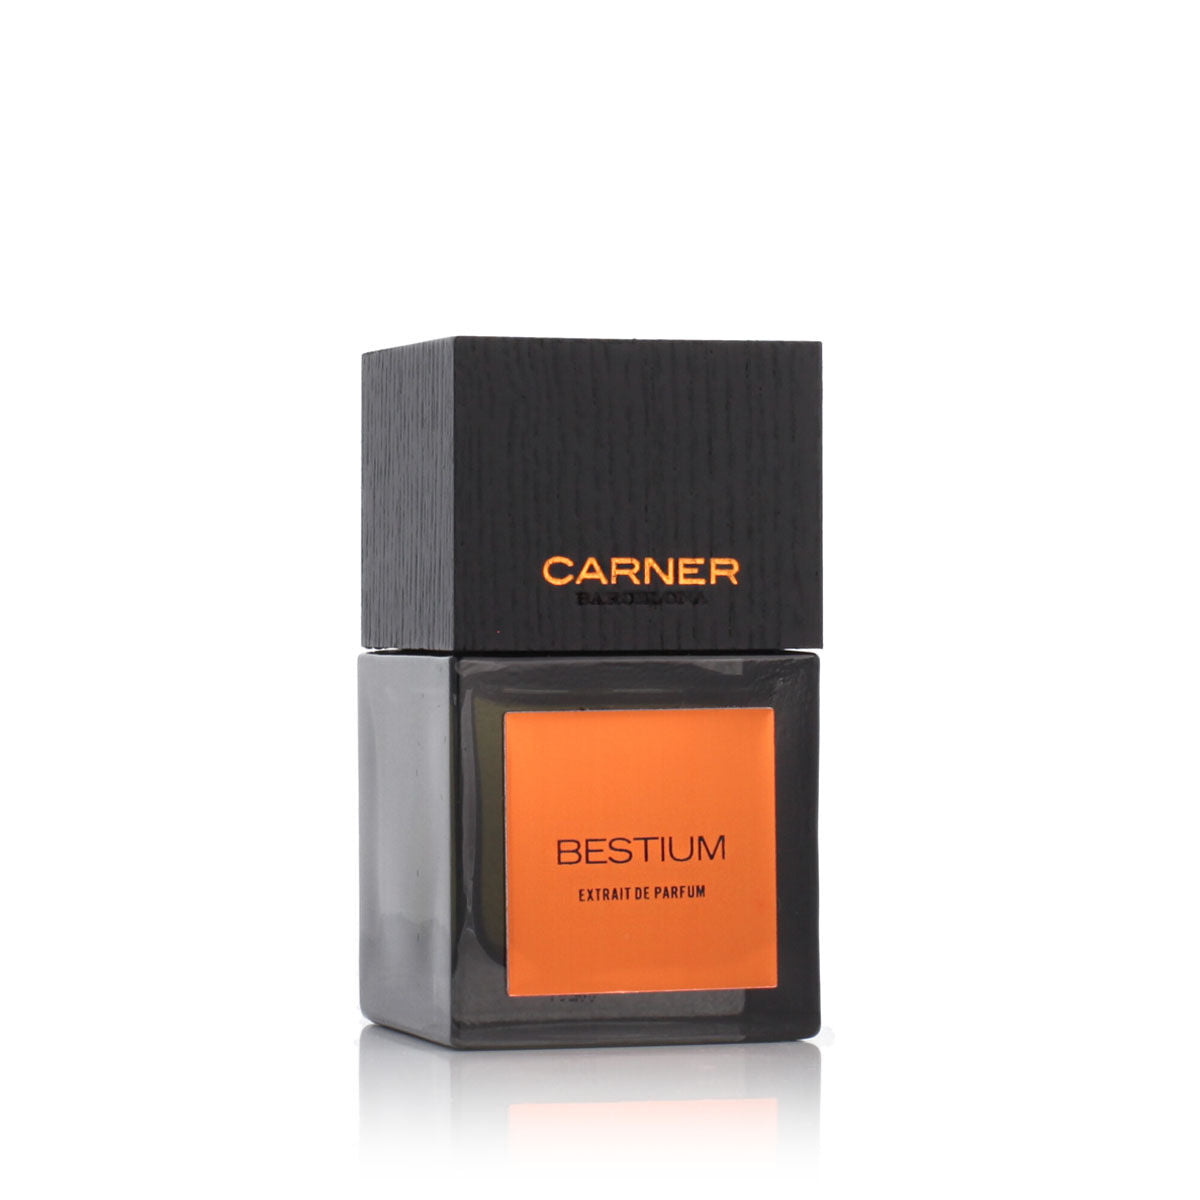 Kaufe Unisex-Parfüm Carner Barcelona Bestium 50 ml bei AWK Flagship um € 133.00